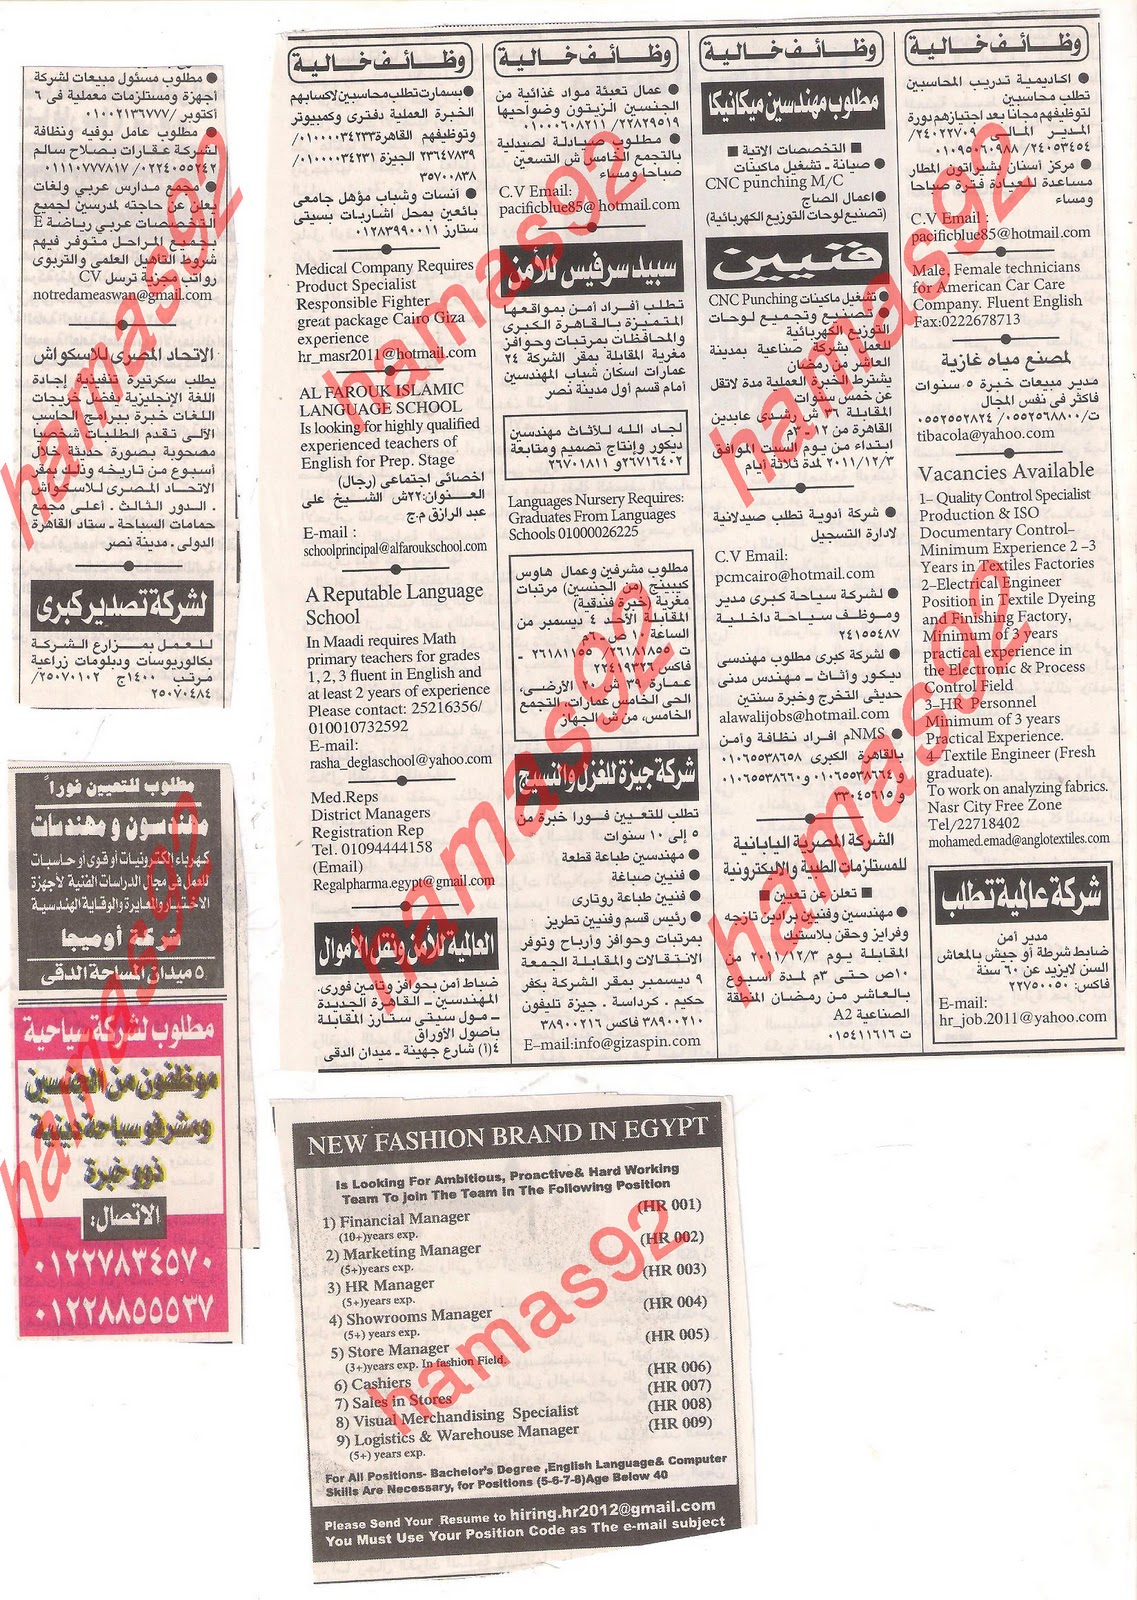 وظائف مصر , وظائف جريدة الاهرام الجمعة 2  ديسمبر 2011 , الجزء الاول Picture+008